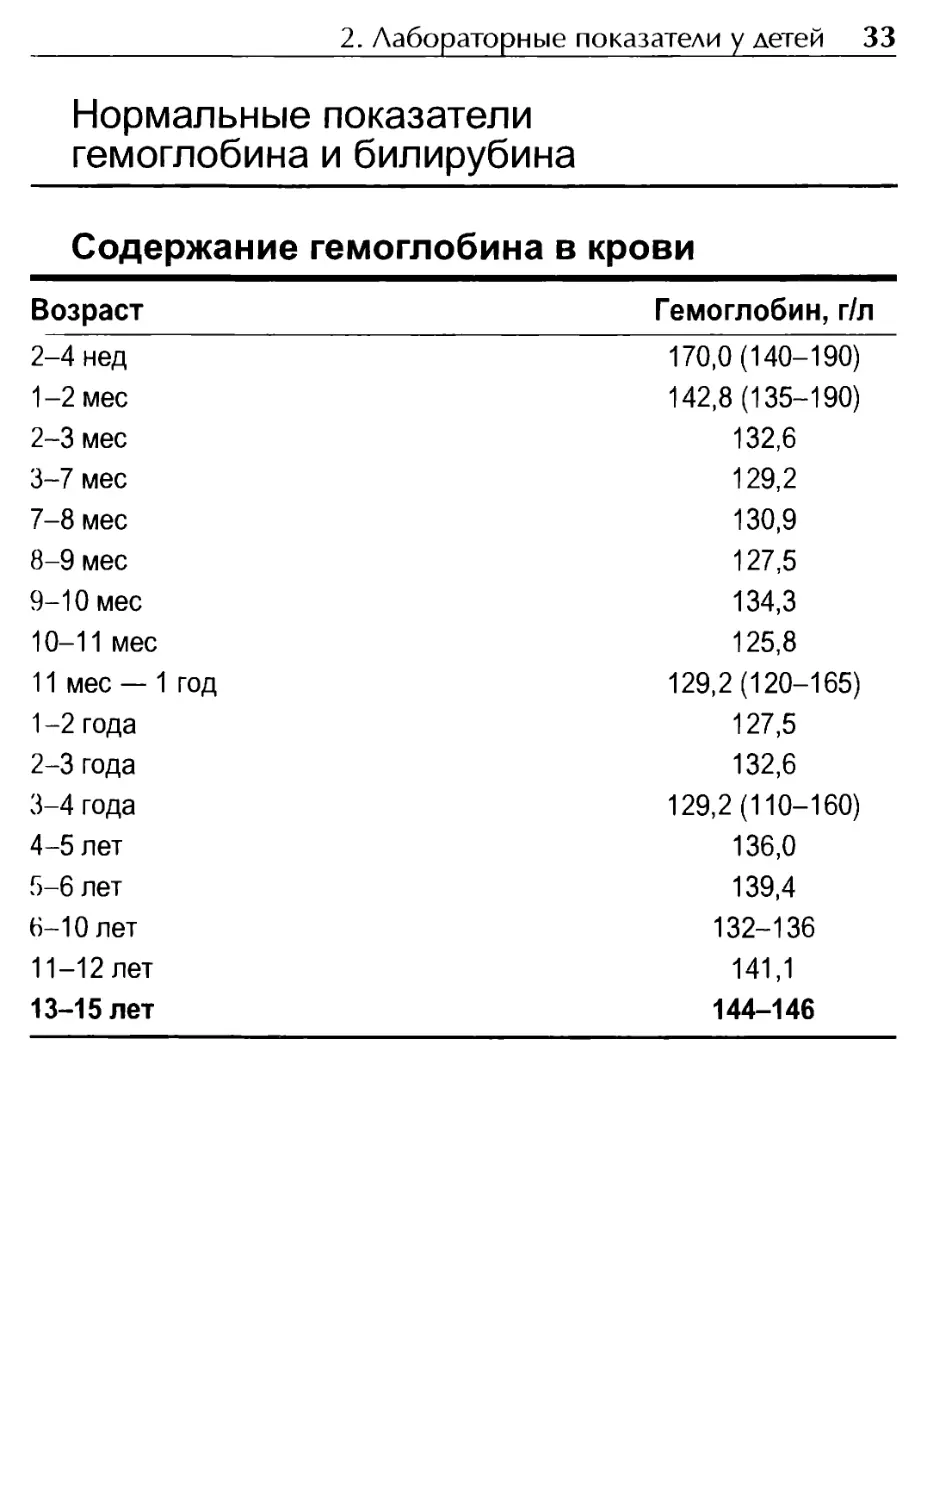 Нормальные показатели гемоглобина и билирубина